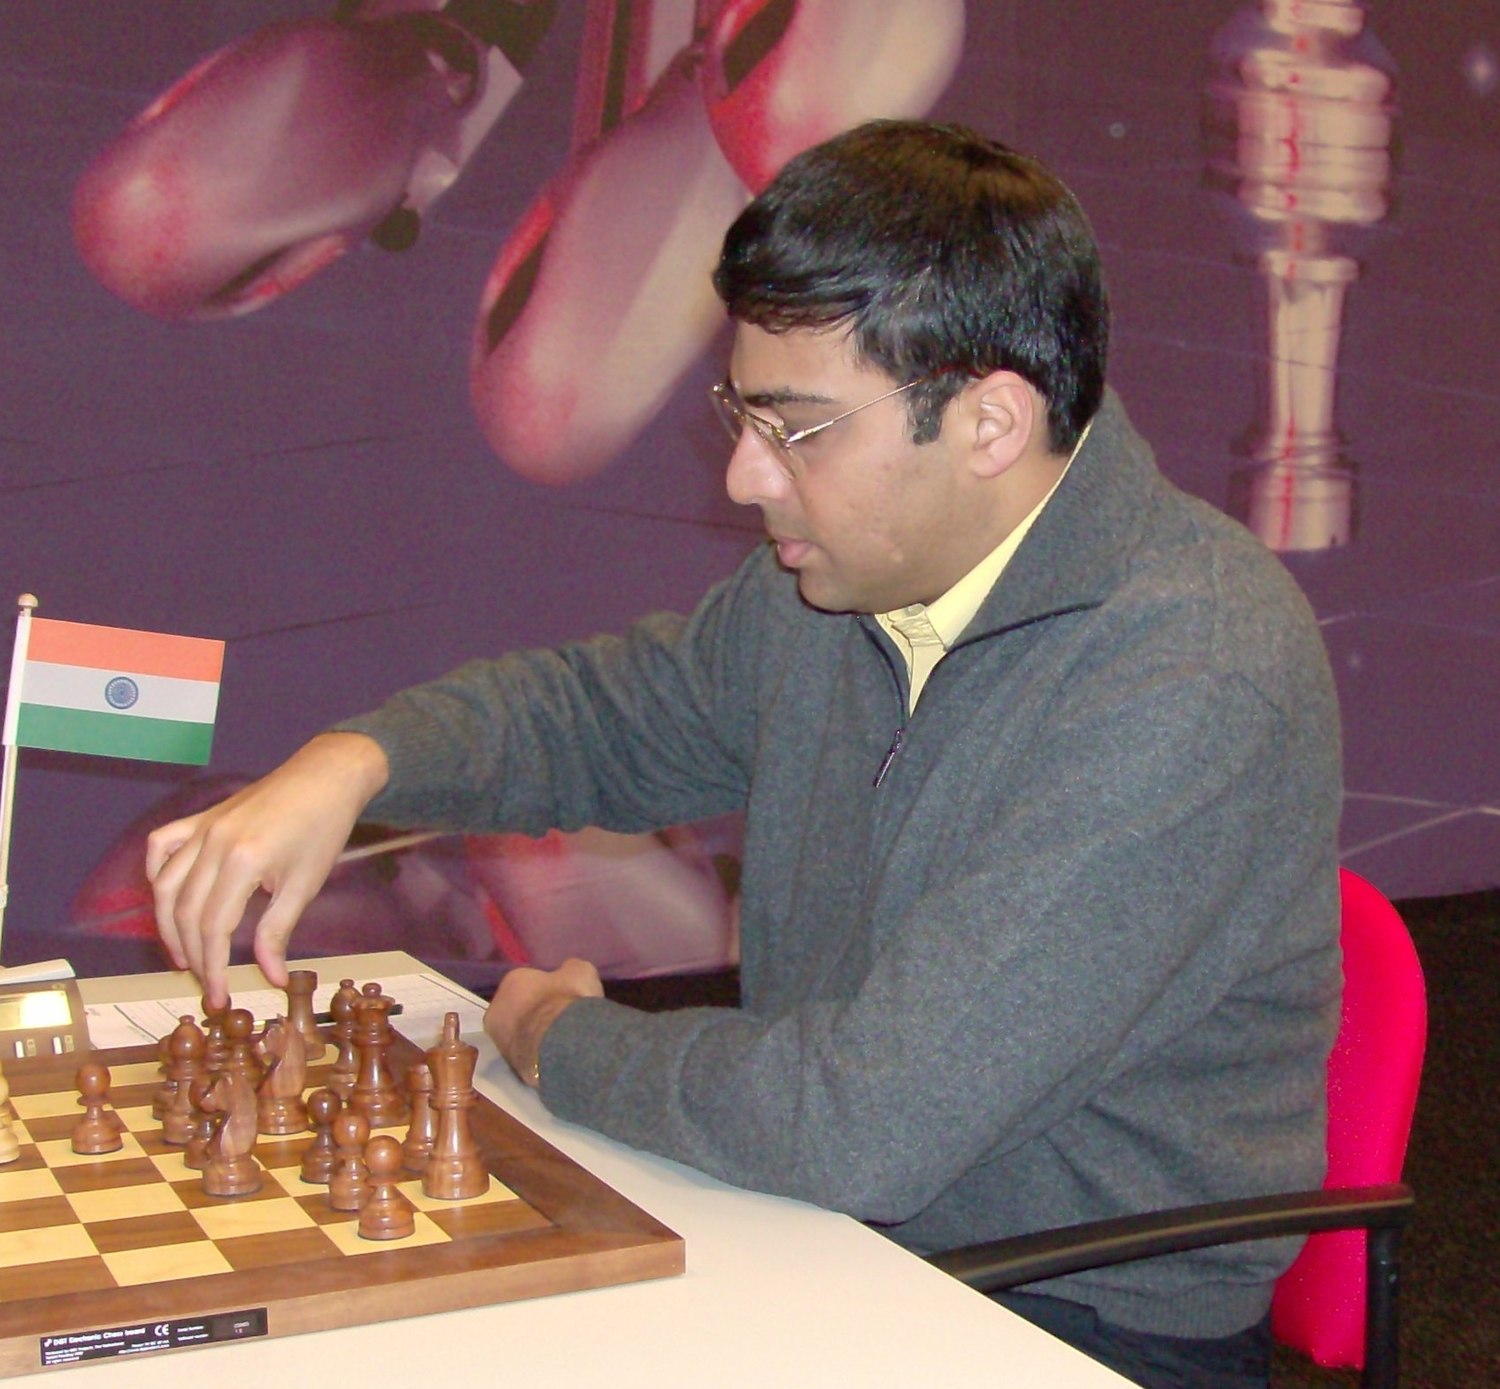 Viswanathan Anand – Wikipédia, a enciclopédia livre